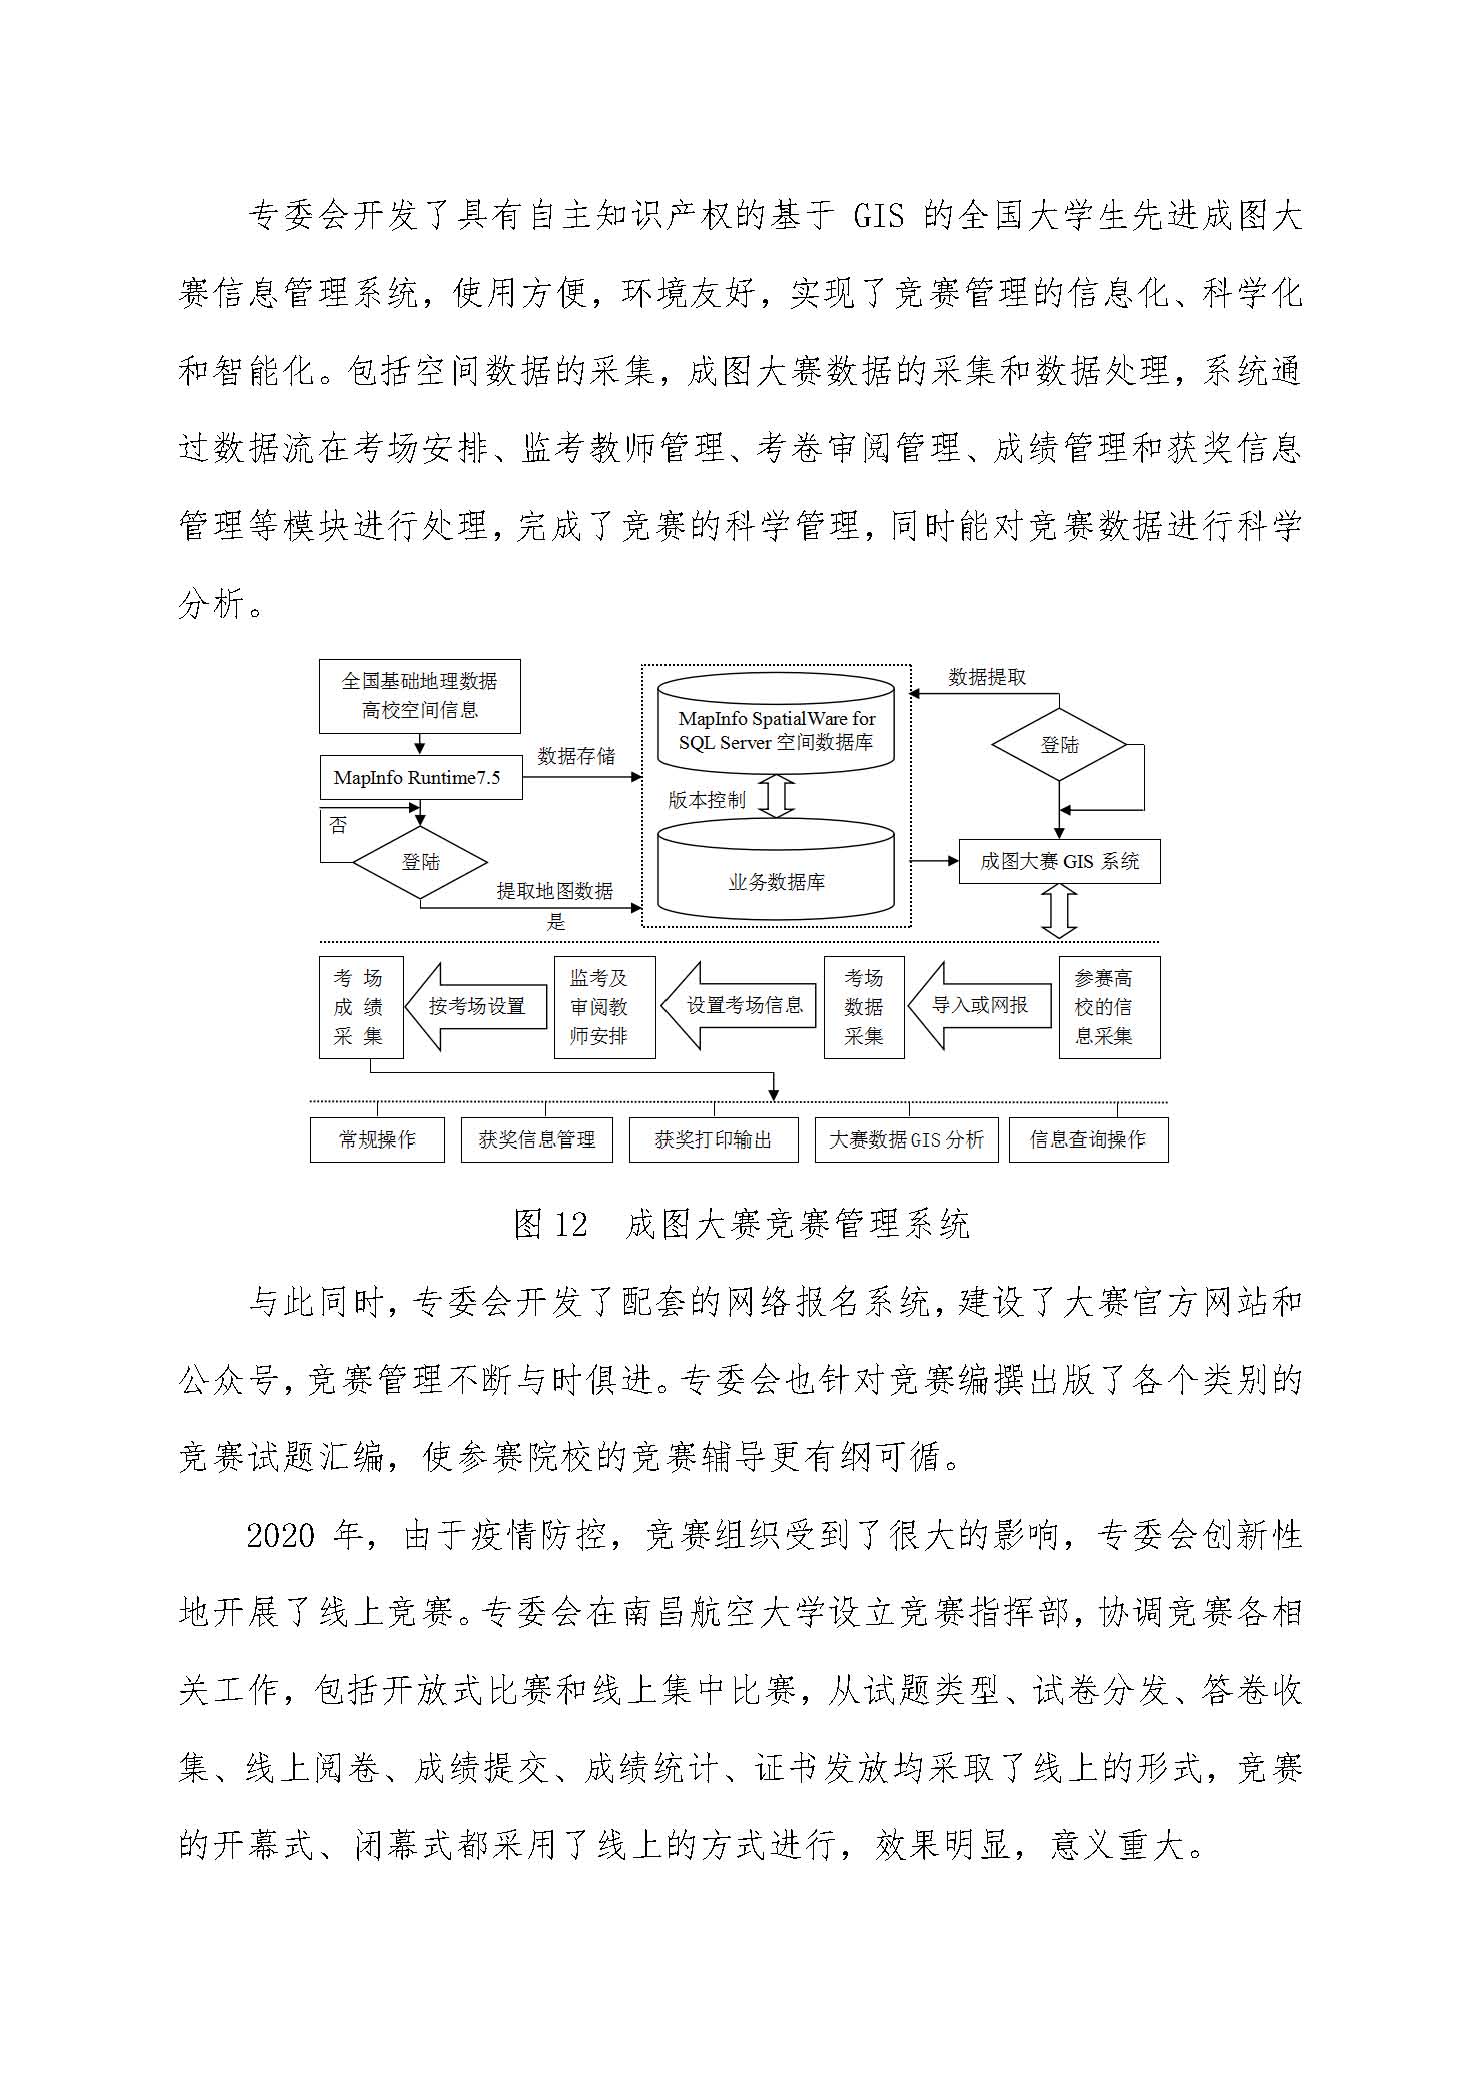 中国图学学会制图技术专业委员会换届工作总结_页面_08.jpg